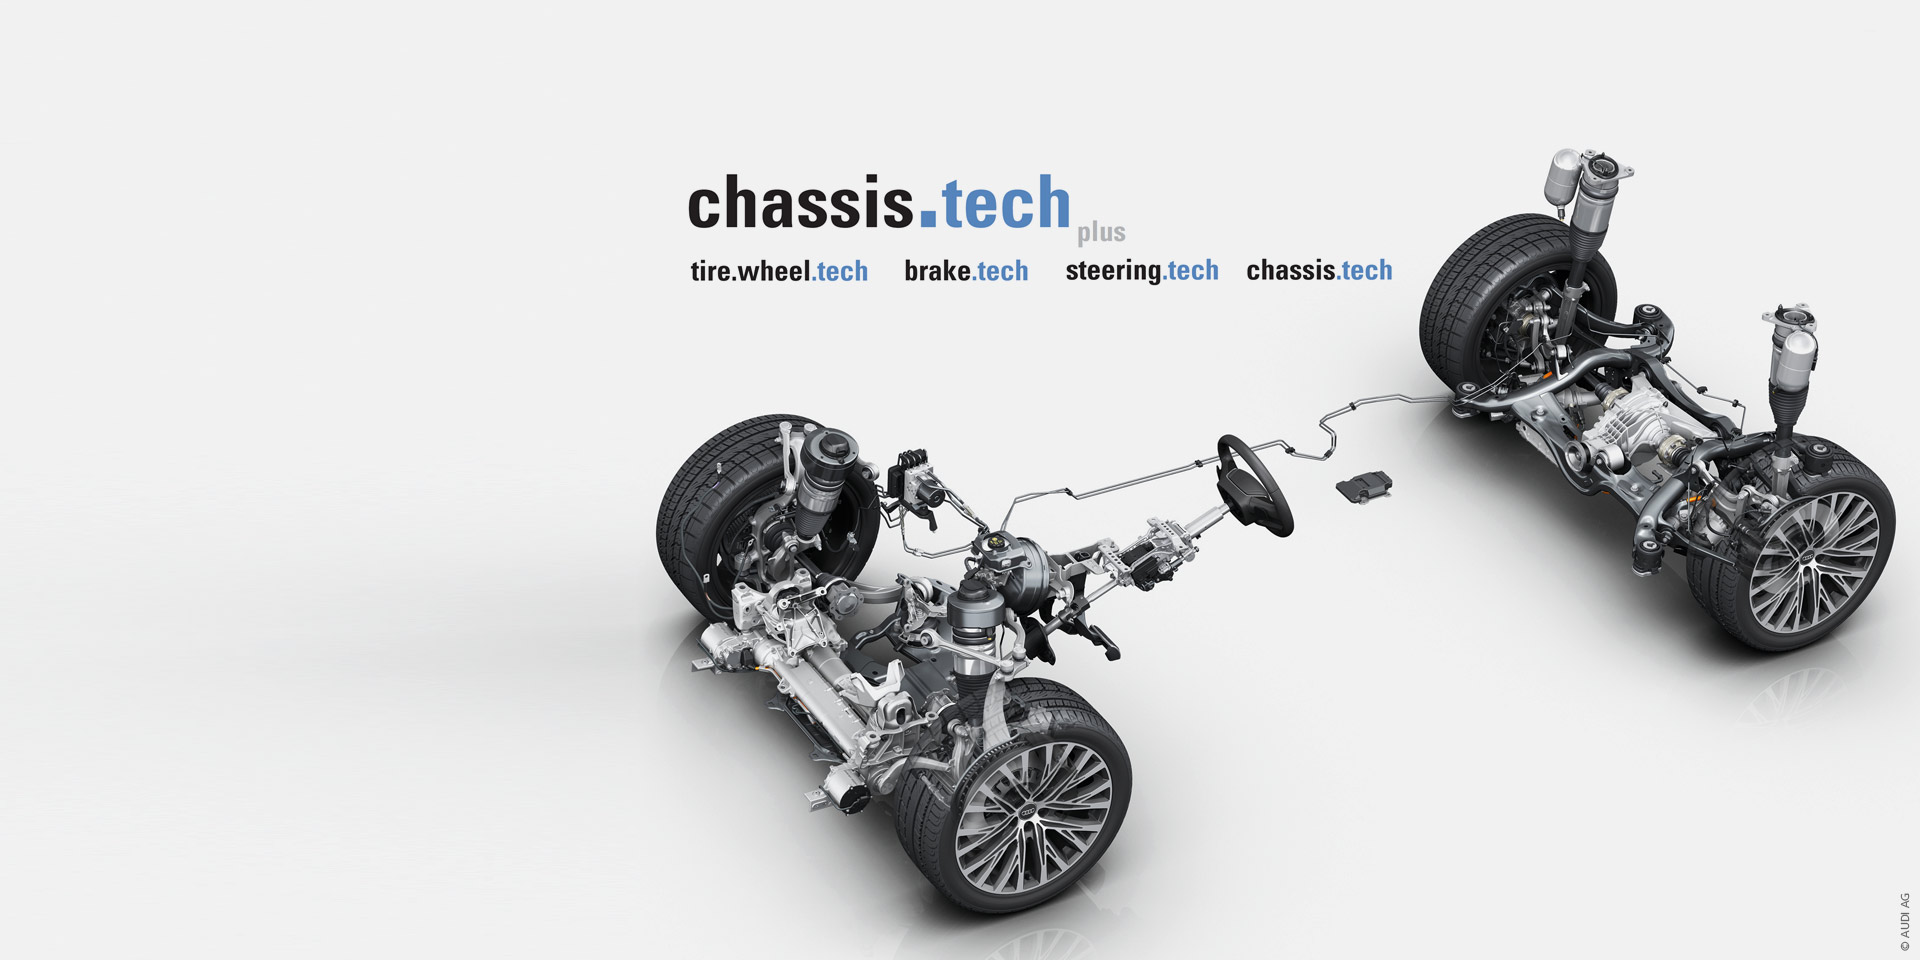 chassis.tech plus | ATZlive Events